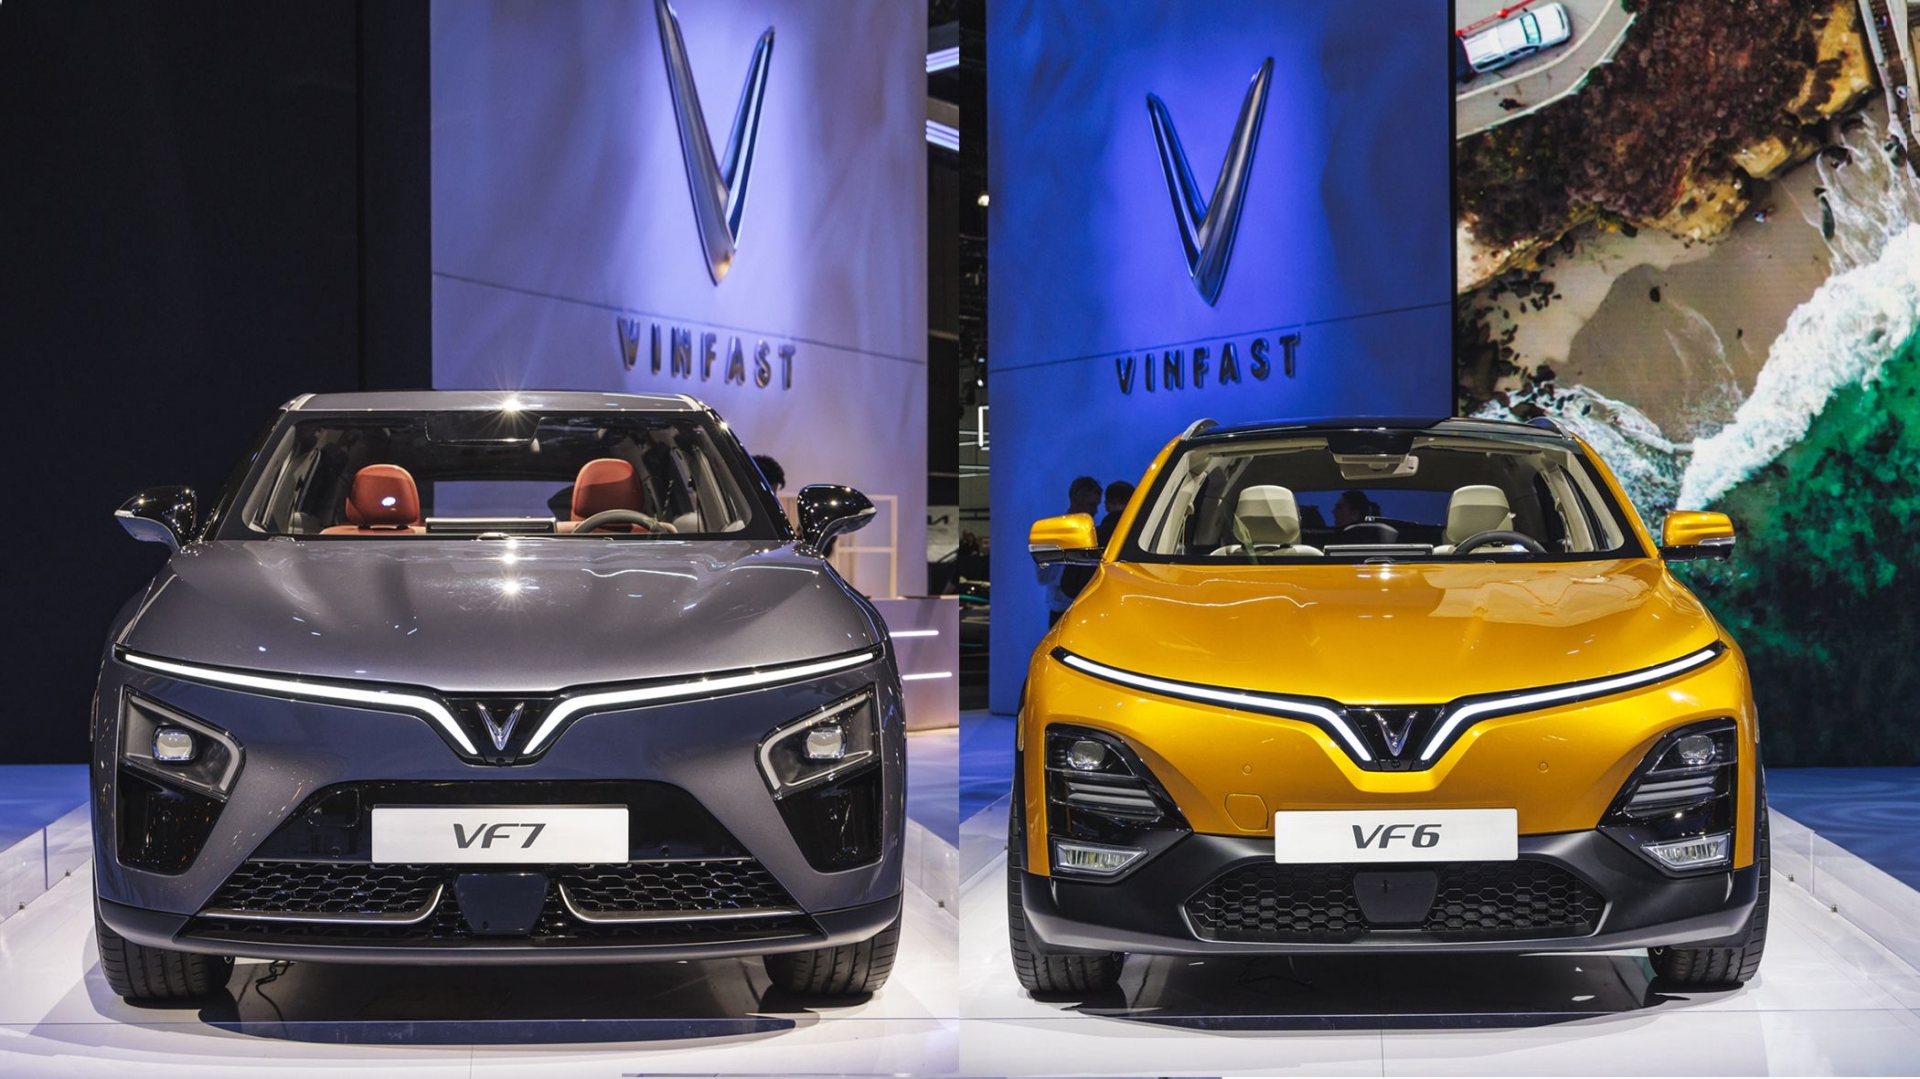 Xe mẫu SUV VF7 và VF6 của VinFast tại một triển lãm ô tô (ảnh: Car and Driver)